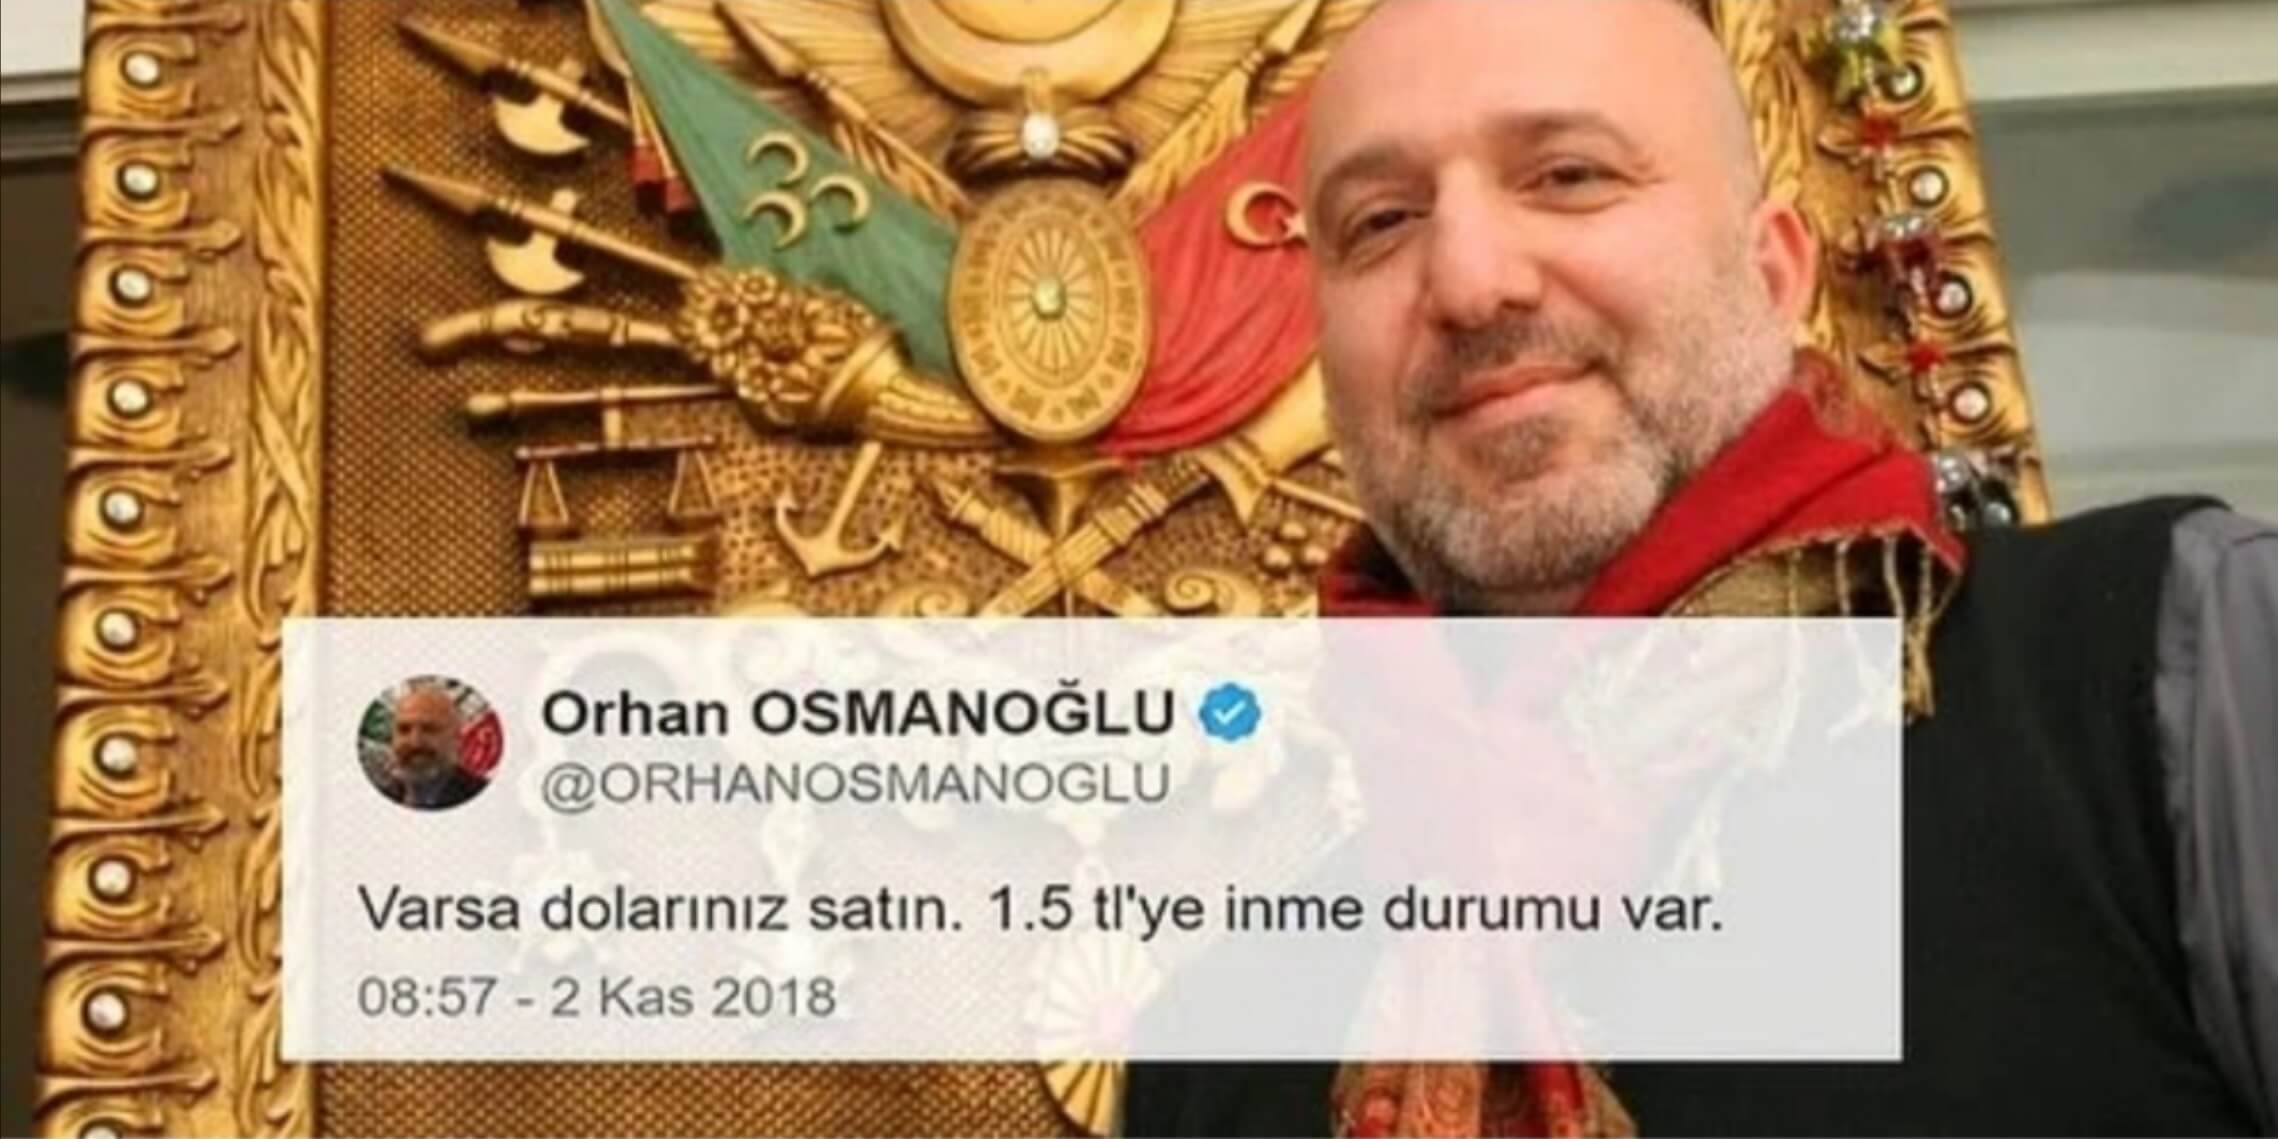 Orhan Osmanoğlu, Varsa dolarınız satın, 1.5 TL’ye inme durumu var.” diye paylaştığı twiti sildi!